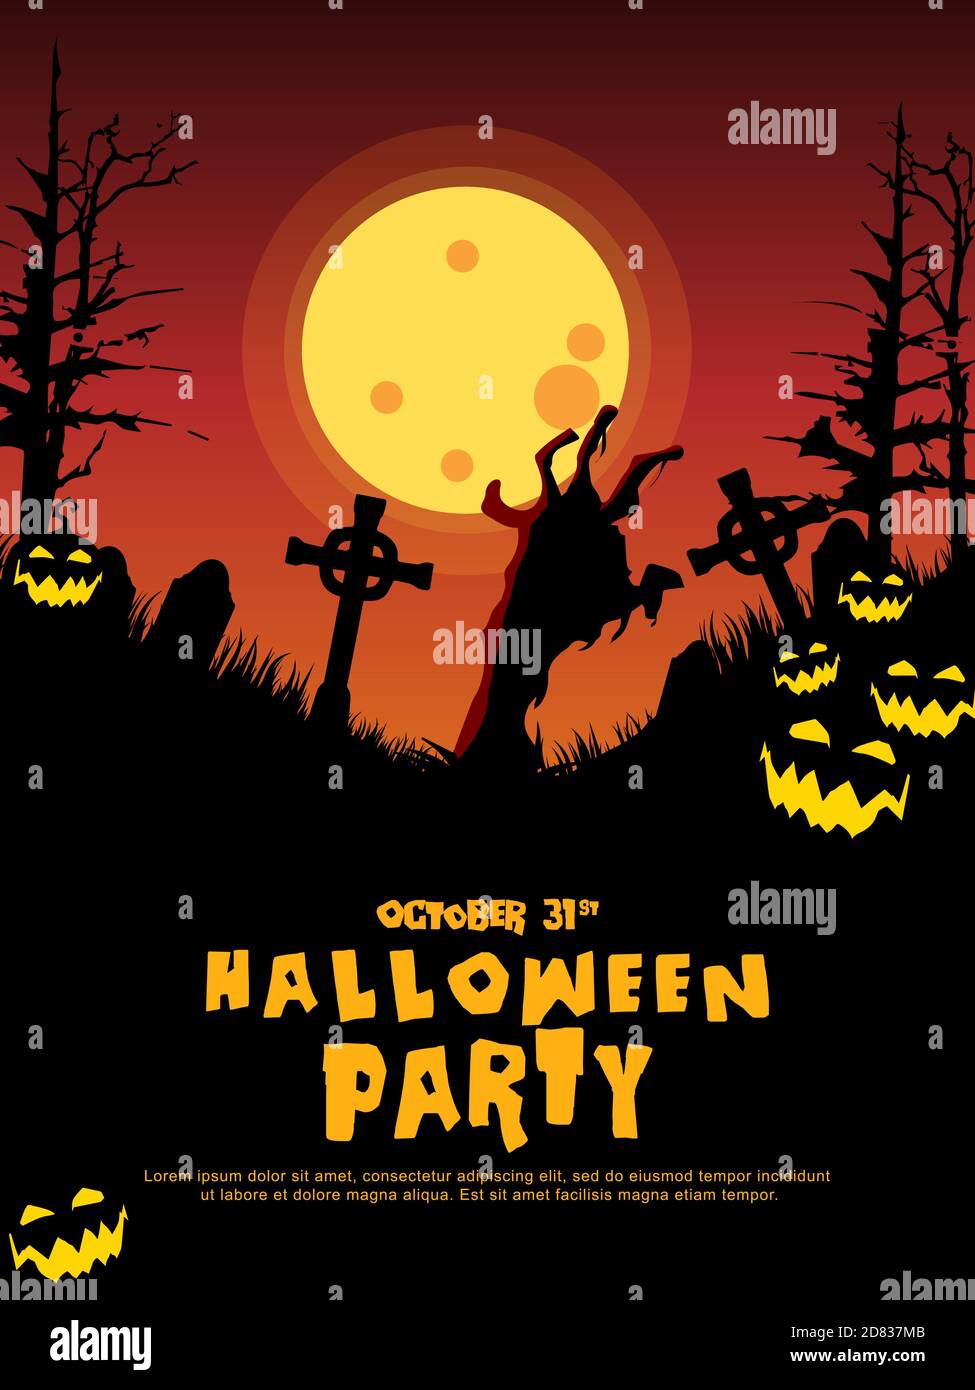 Halloween-Werbebanner. Halloween Hintergrund mit Grabsteinen, Kürbis, Monster, Spukhaus und Vollmond. Einladungsflyer oder Vorlage für eine Hallowe Stock Vektor